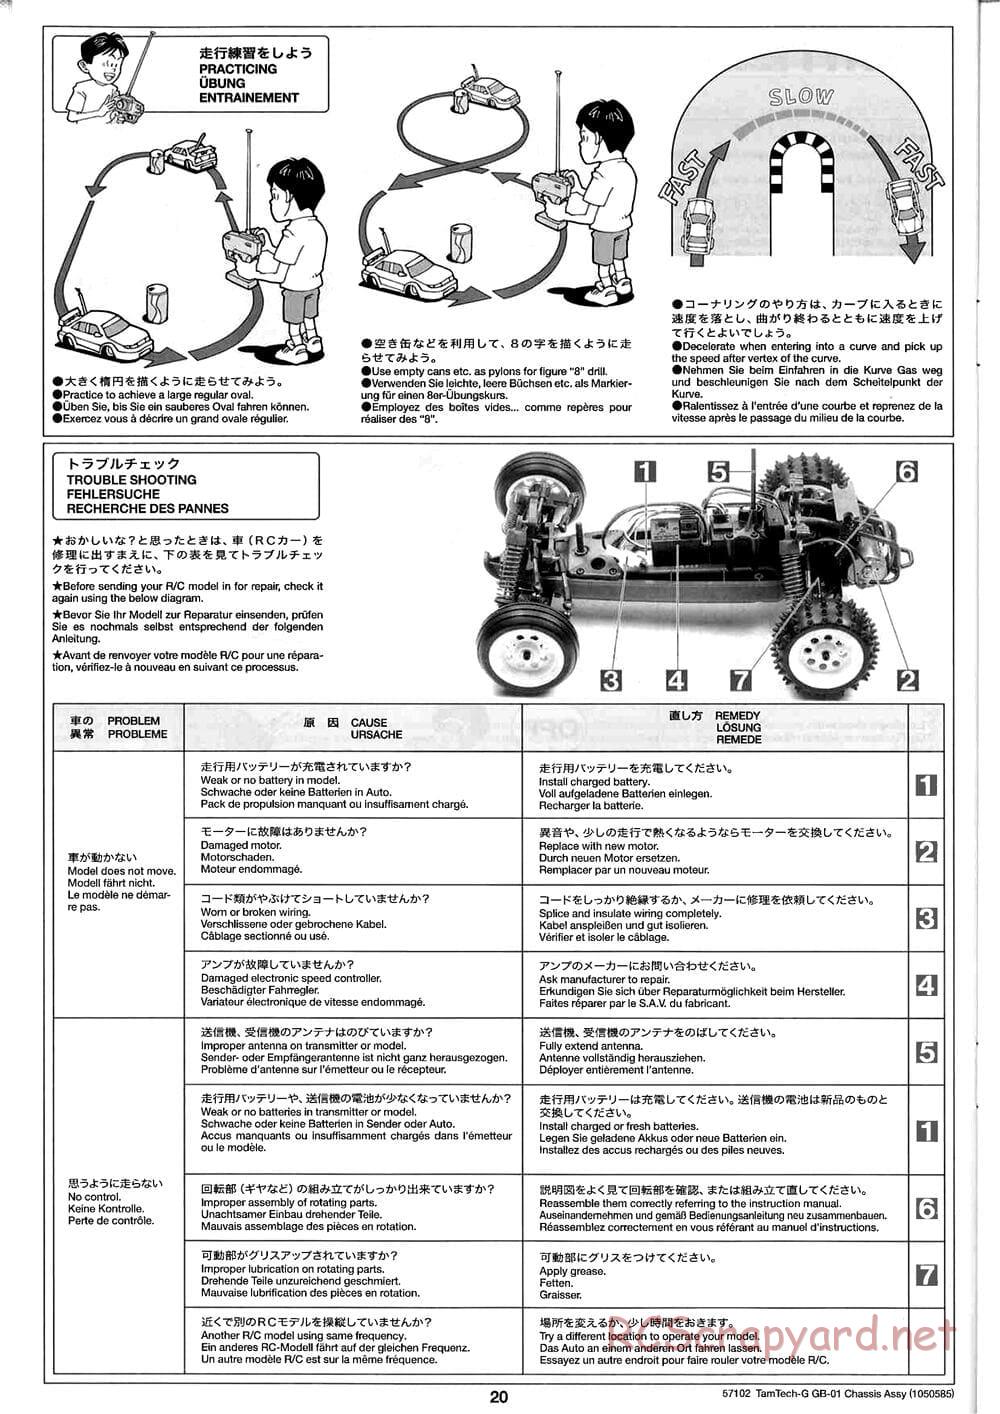 Tamiya - GB-01 Chassis - Manual - Page 20